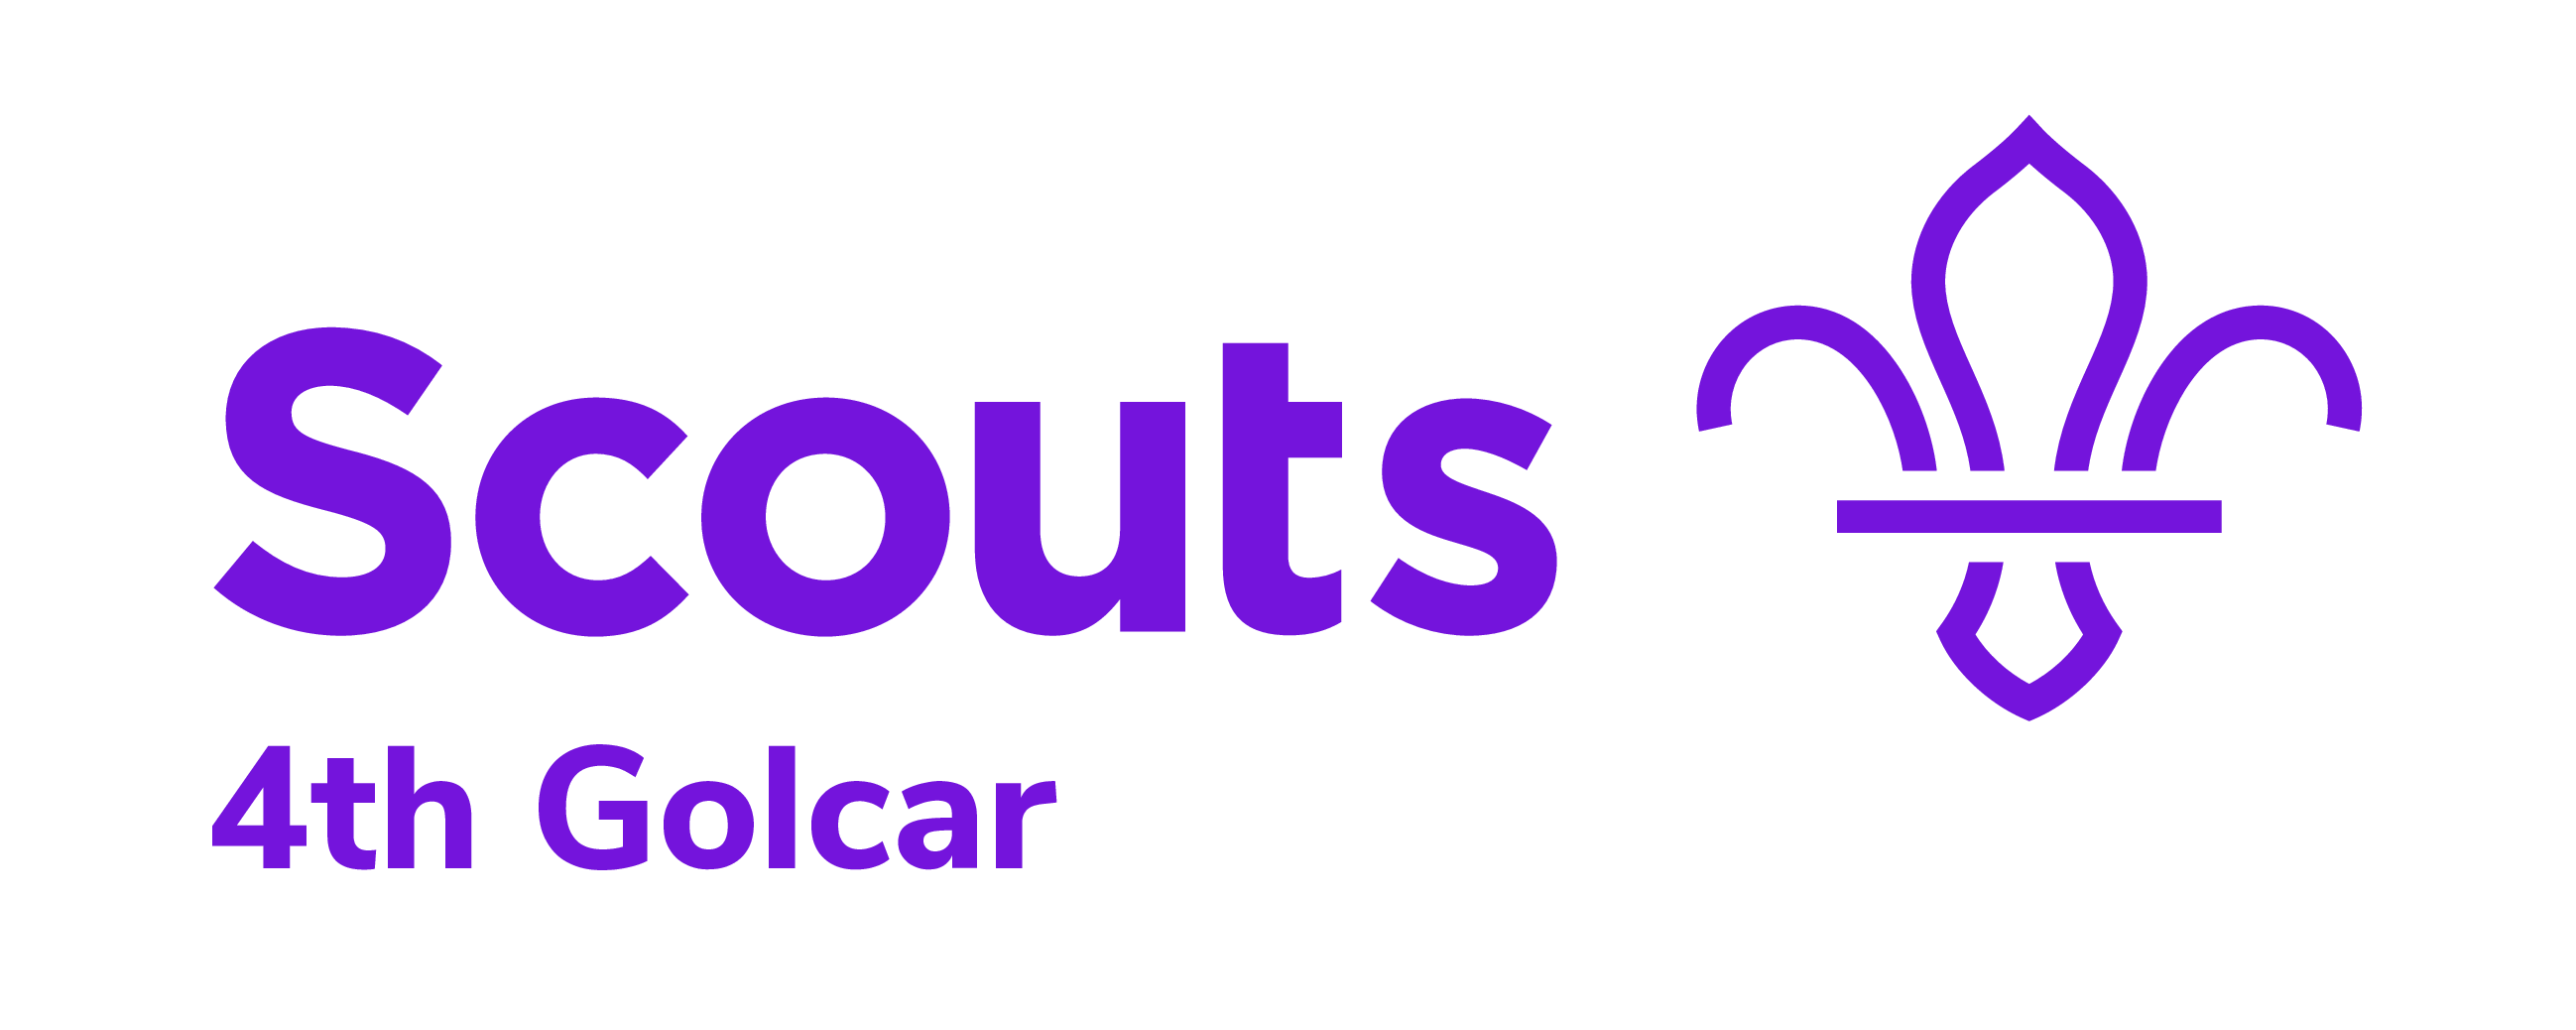 4th Golcar Scout Logo